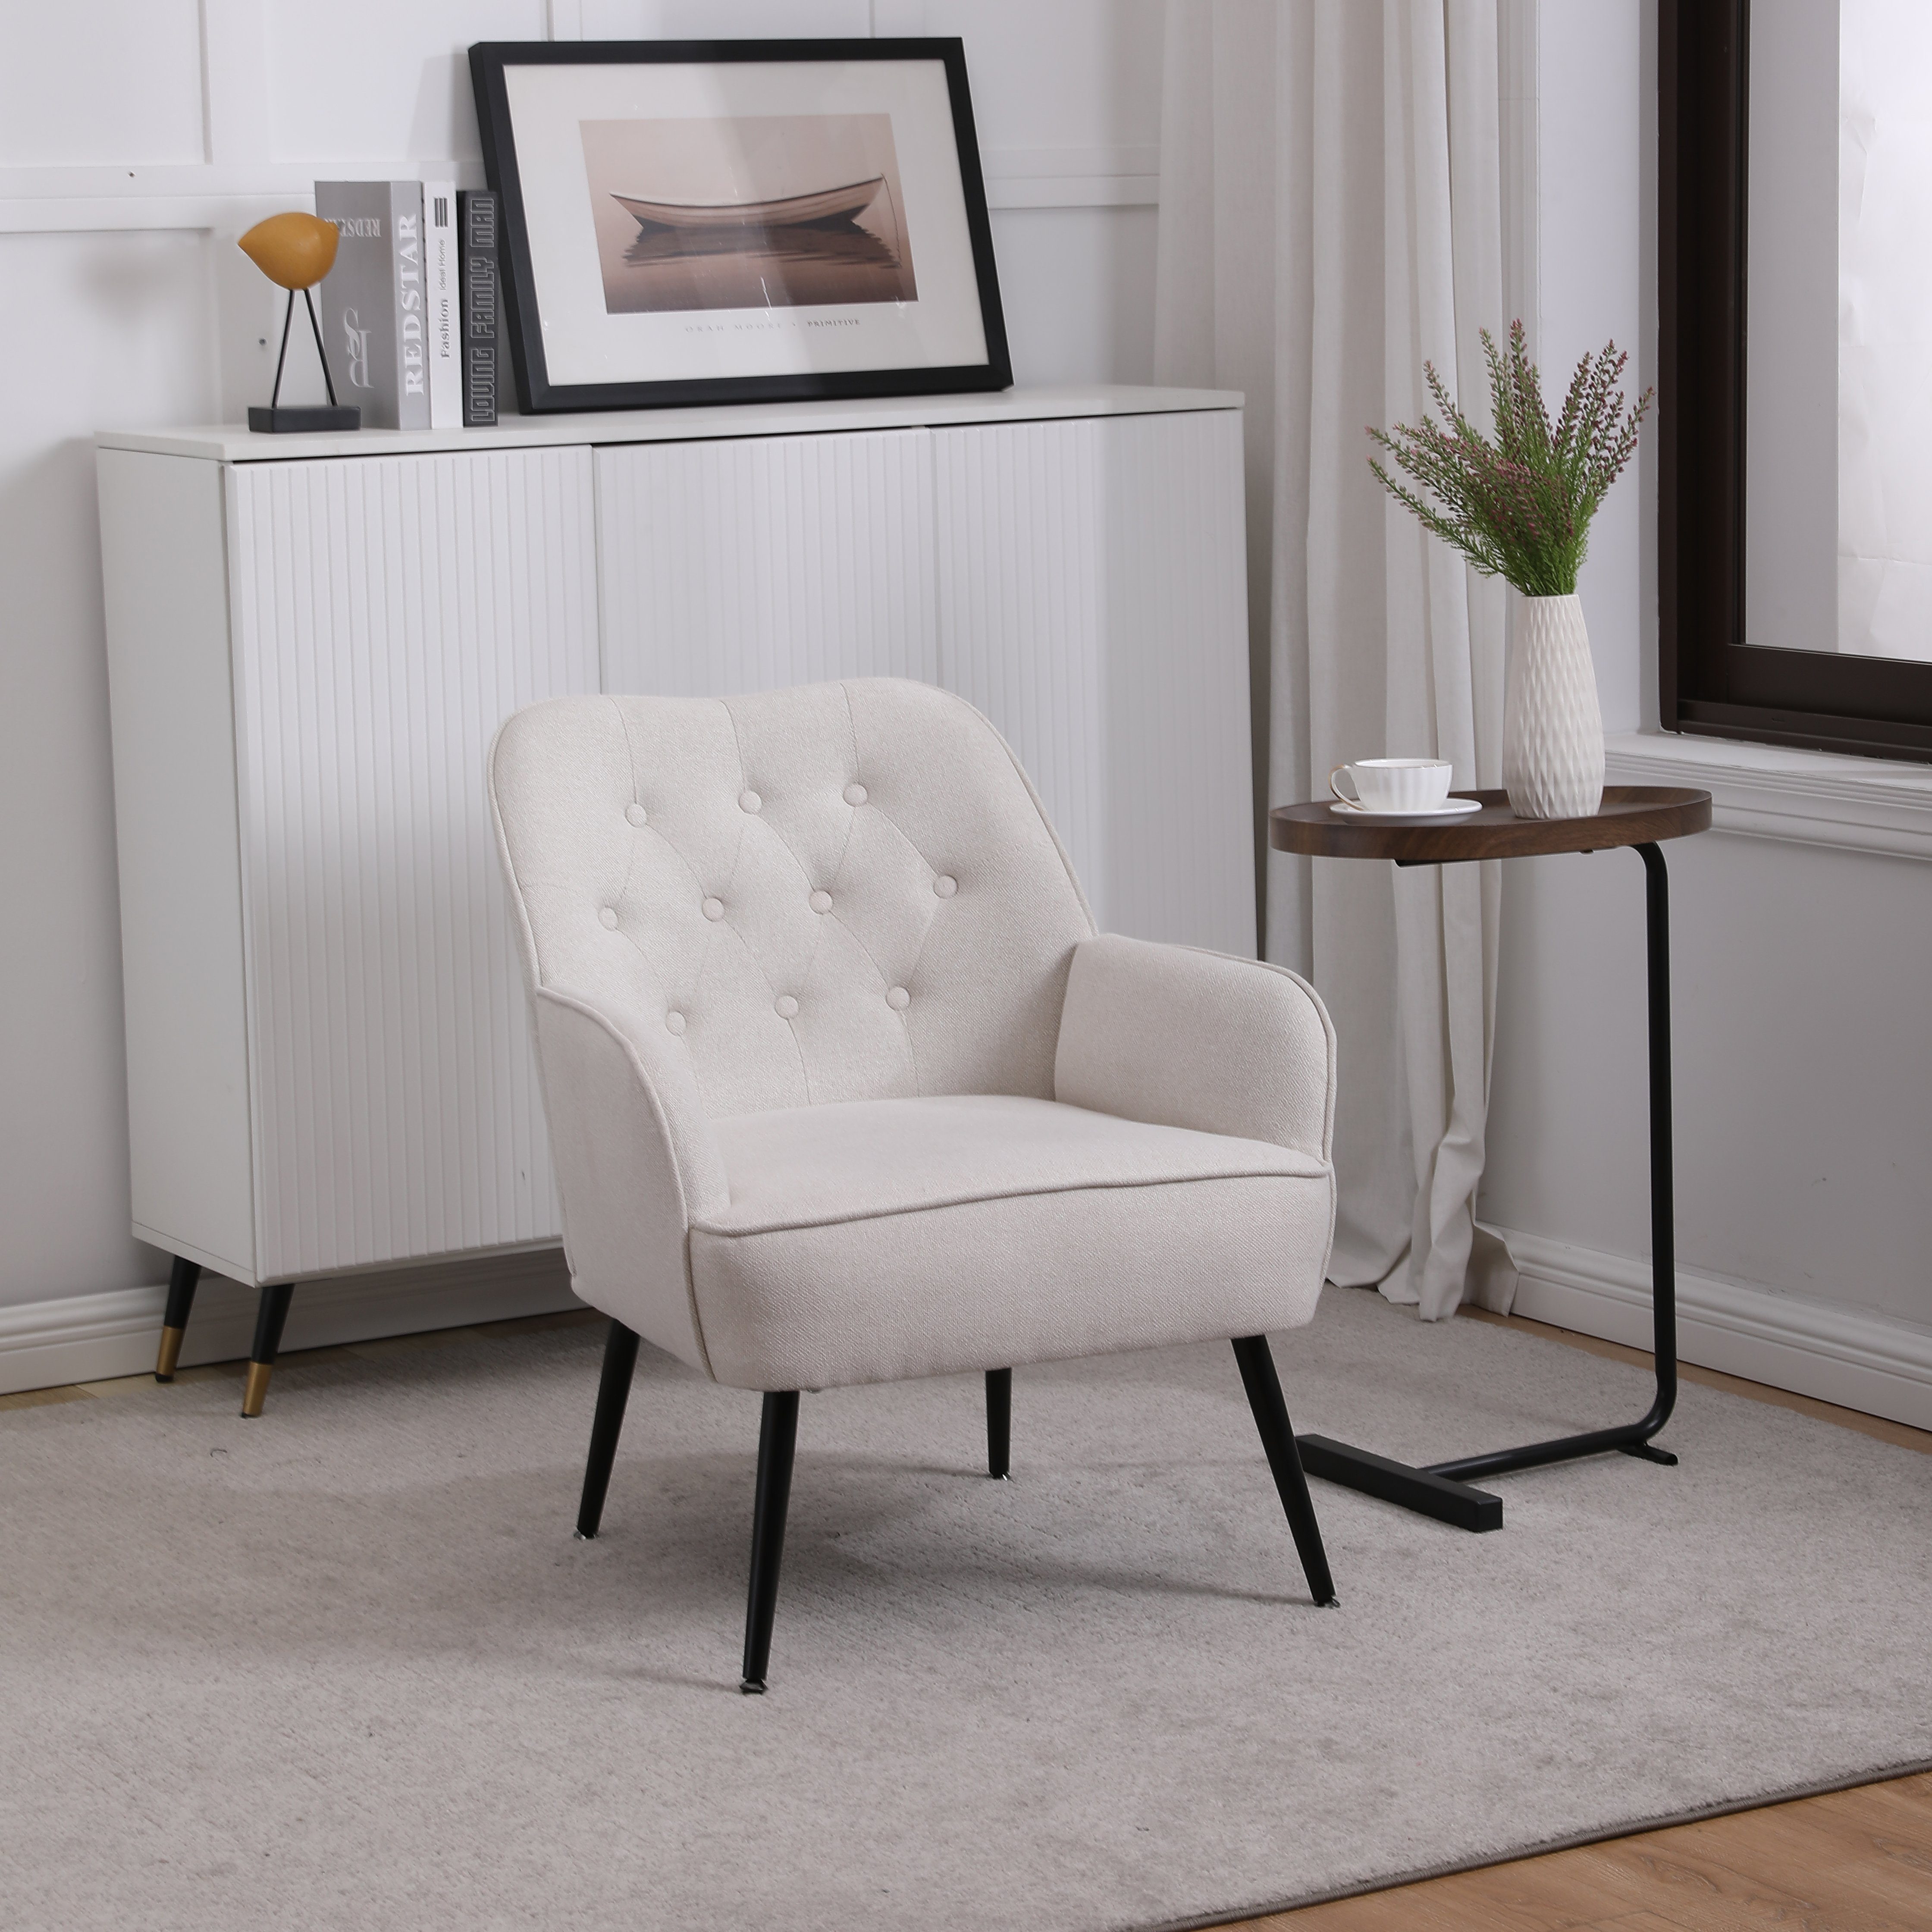 HAUSS SPLOE Loungesessel Ohrensessel Polstersessel Fernsehsessel Einzelsofa (Büro Freizeit Gepolsterte Einzelsofa Stuhl), Kaffee Stuhl mit Metallbeinen weiß